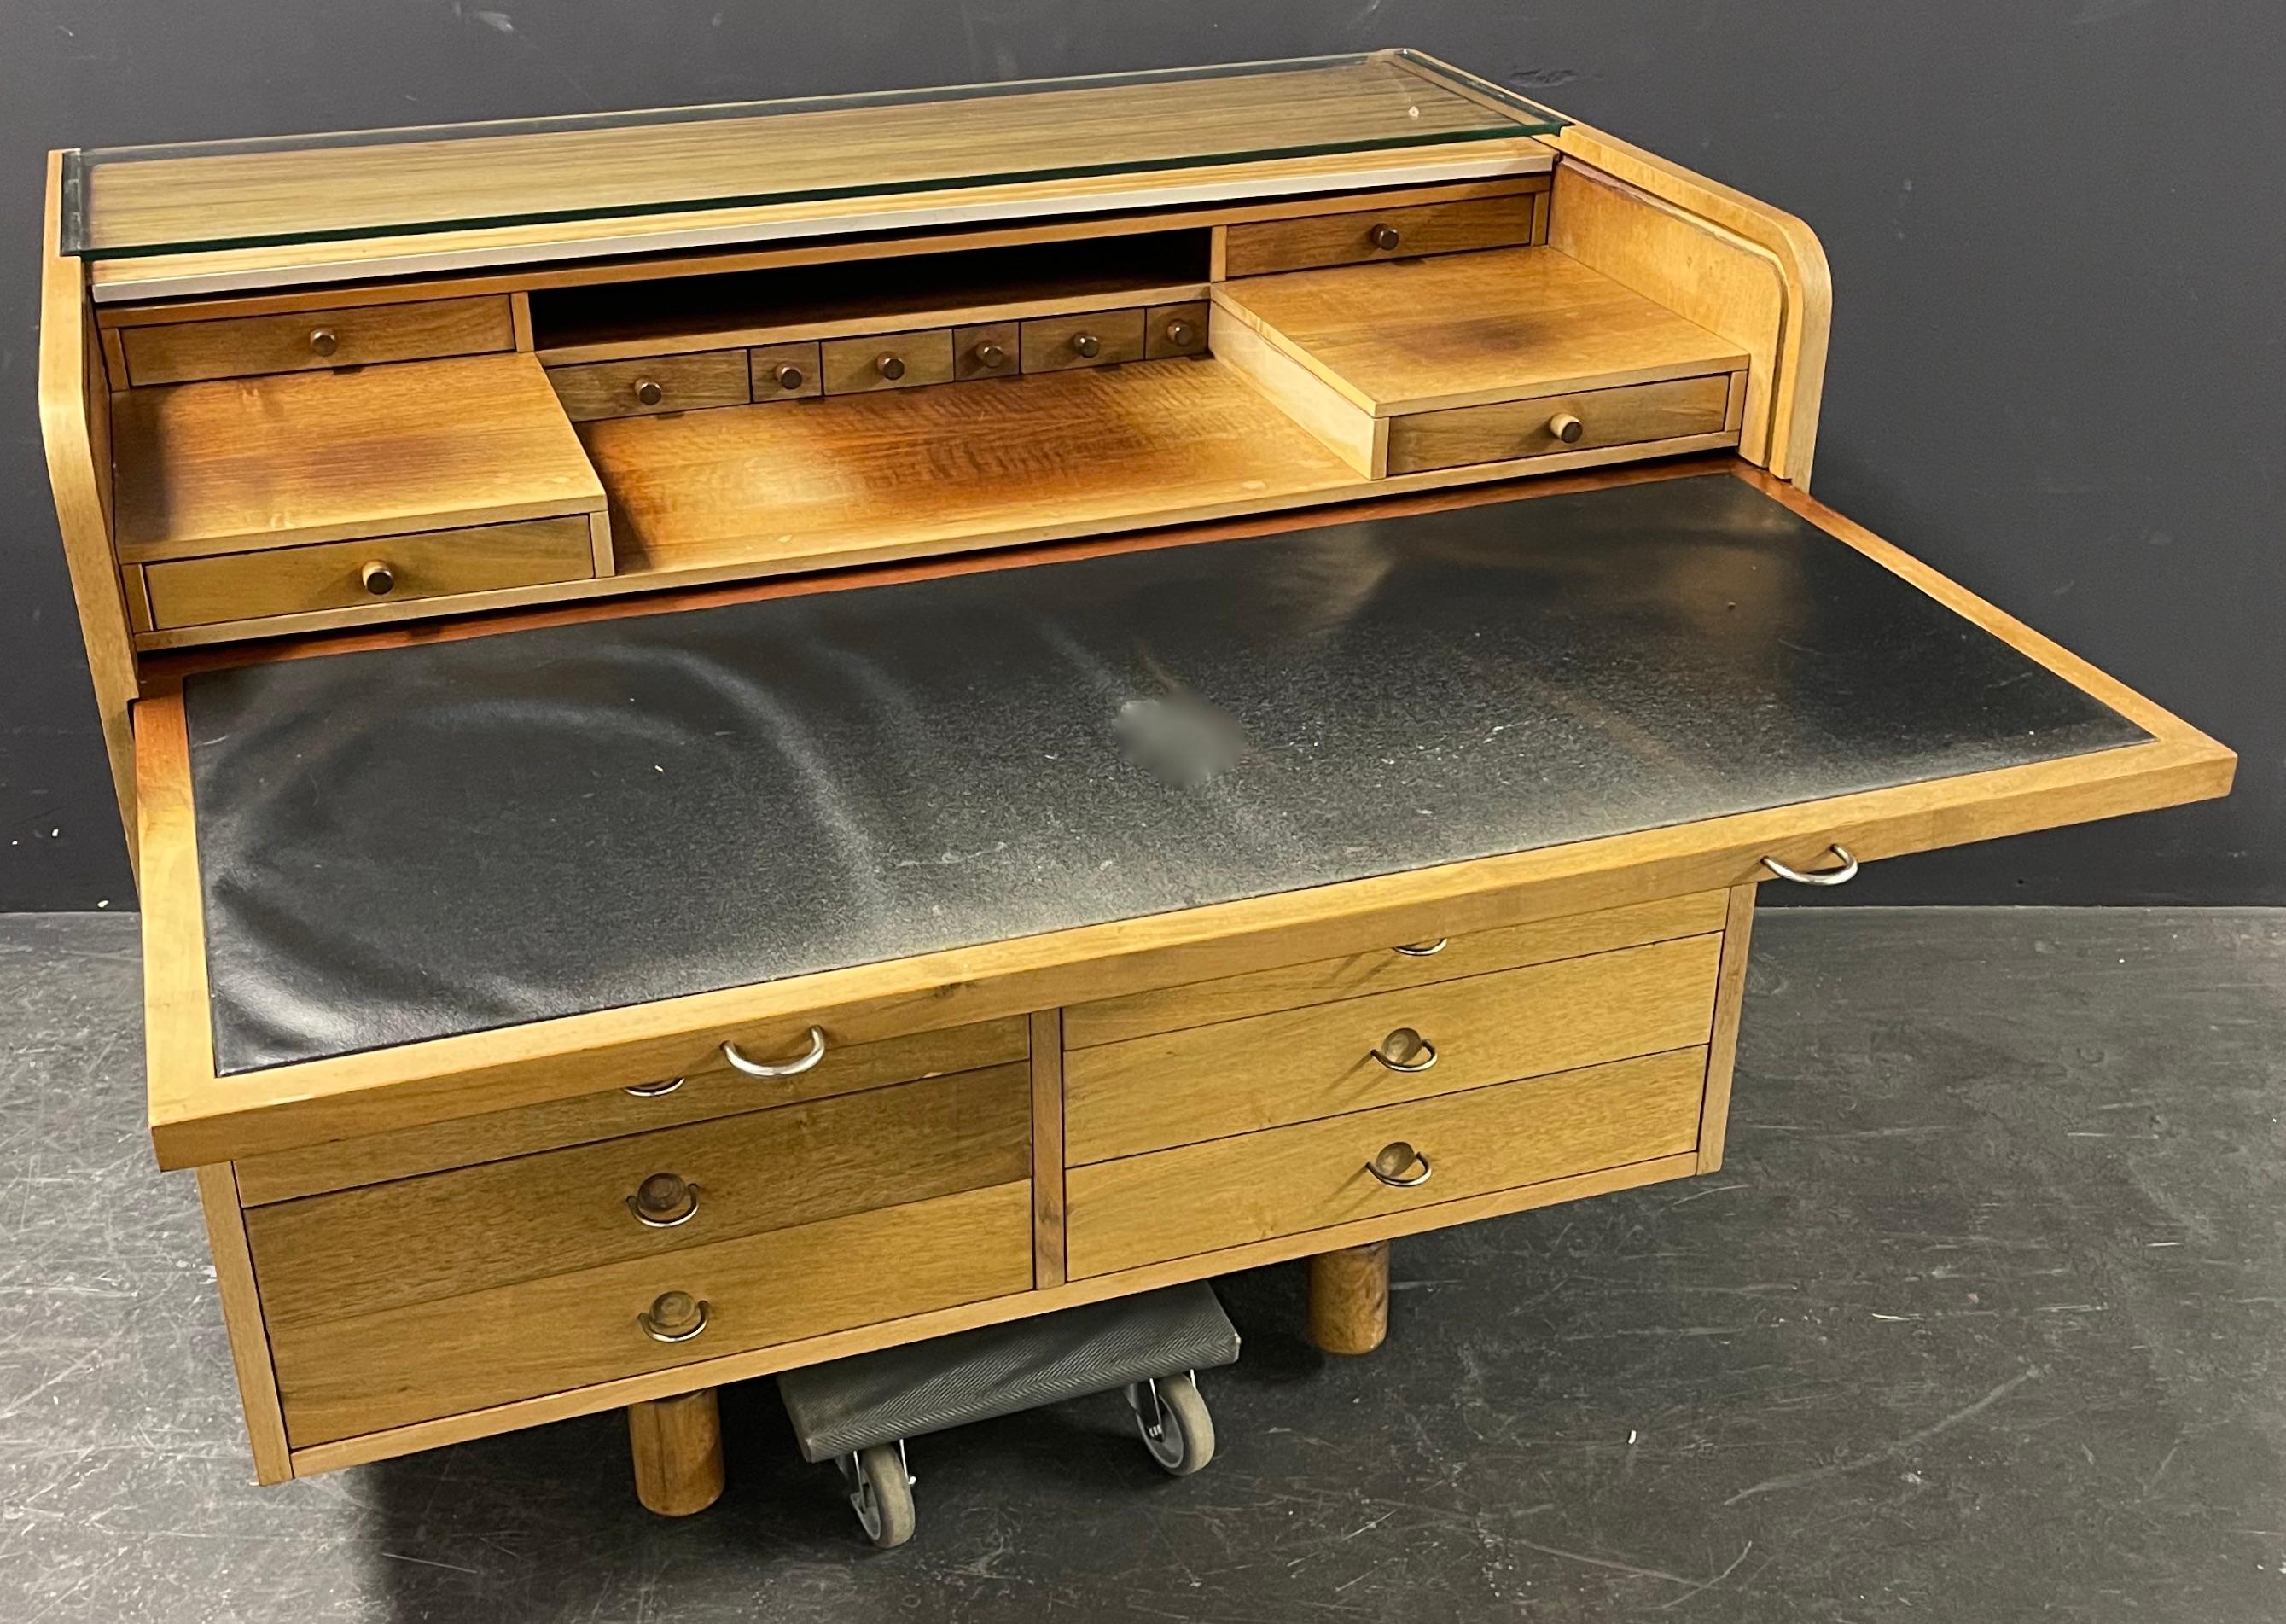 Schreibtisch aus Nussbaumholz, Modell 804, entworfen 1961 von Gianfranco Frattini für Bernini, Italien. Tambourdeckel, hinter dem sich kleine Schubladen und eine ausziehbare Lederschreibfläche verbergen. Vorderseite mit zehn Schubladen und vier